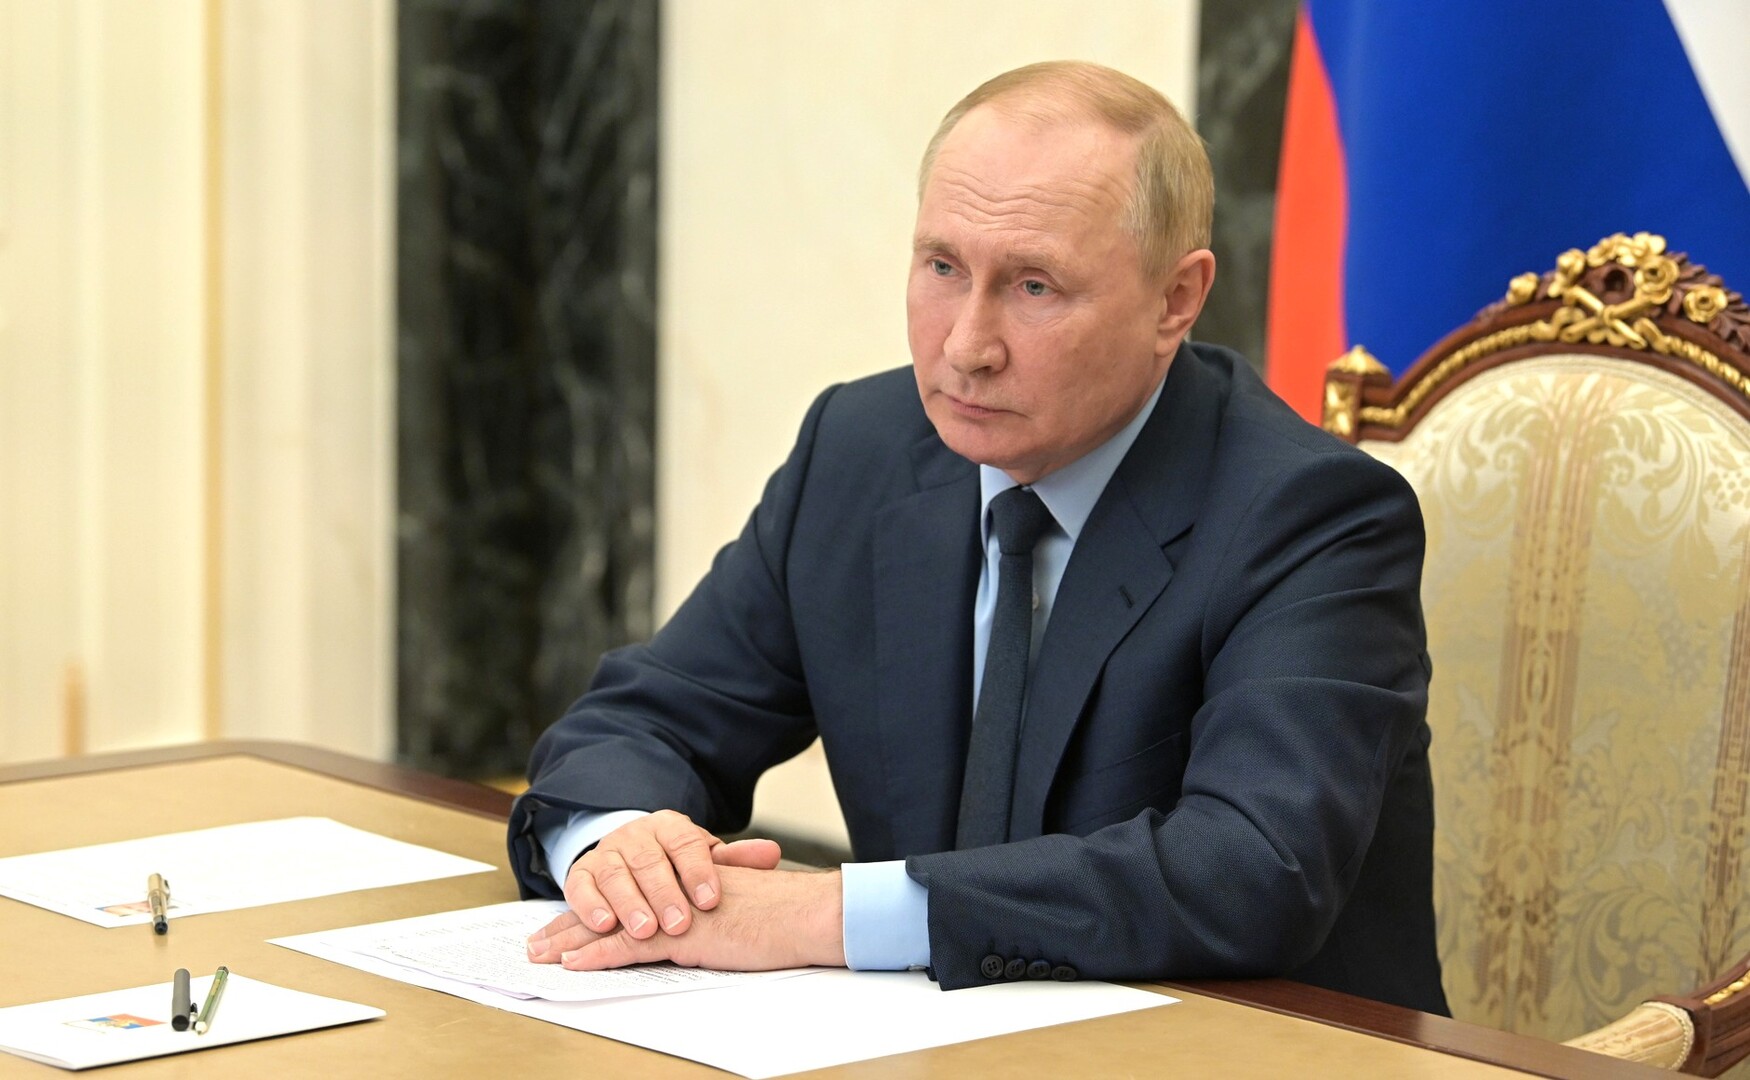 بوتين يوقع مرسوما بمنح الصحفية الراحلة داريا دوغينا وسام الشجاعة